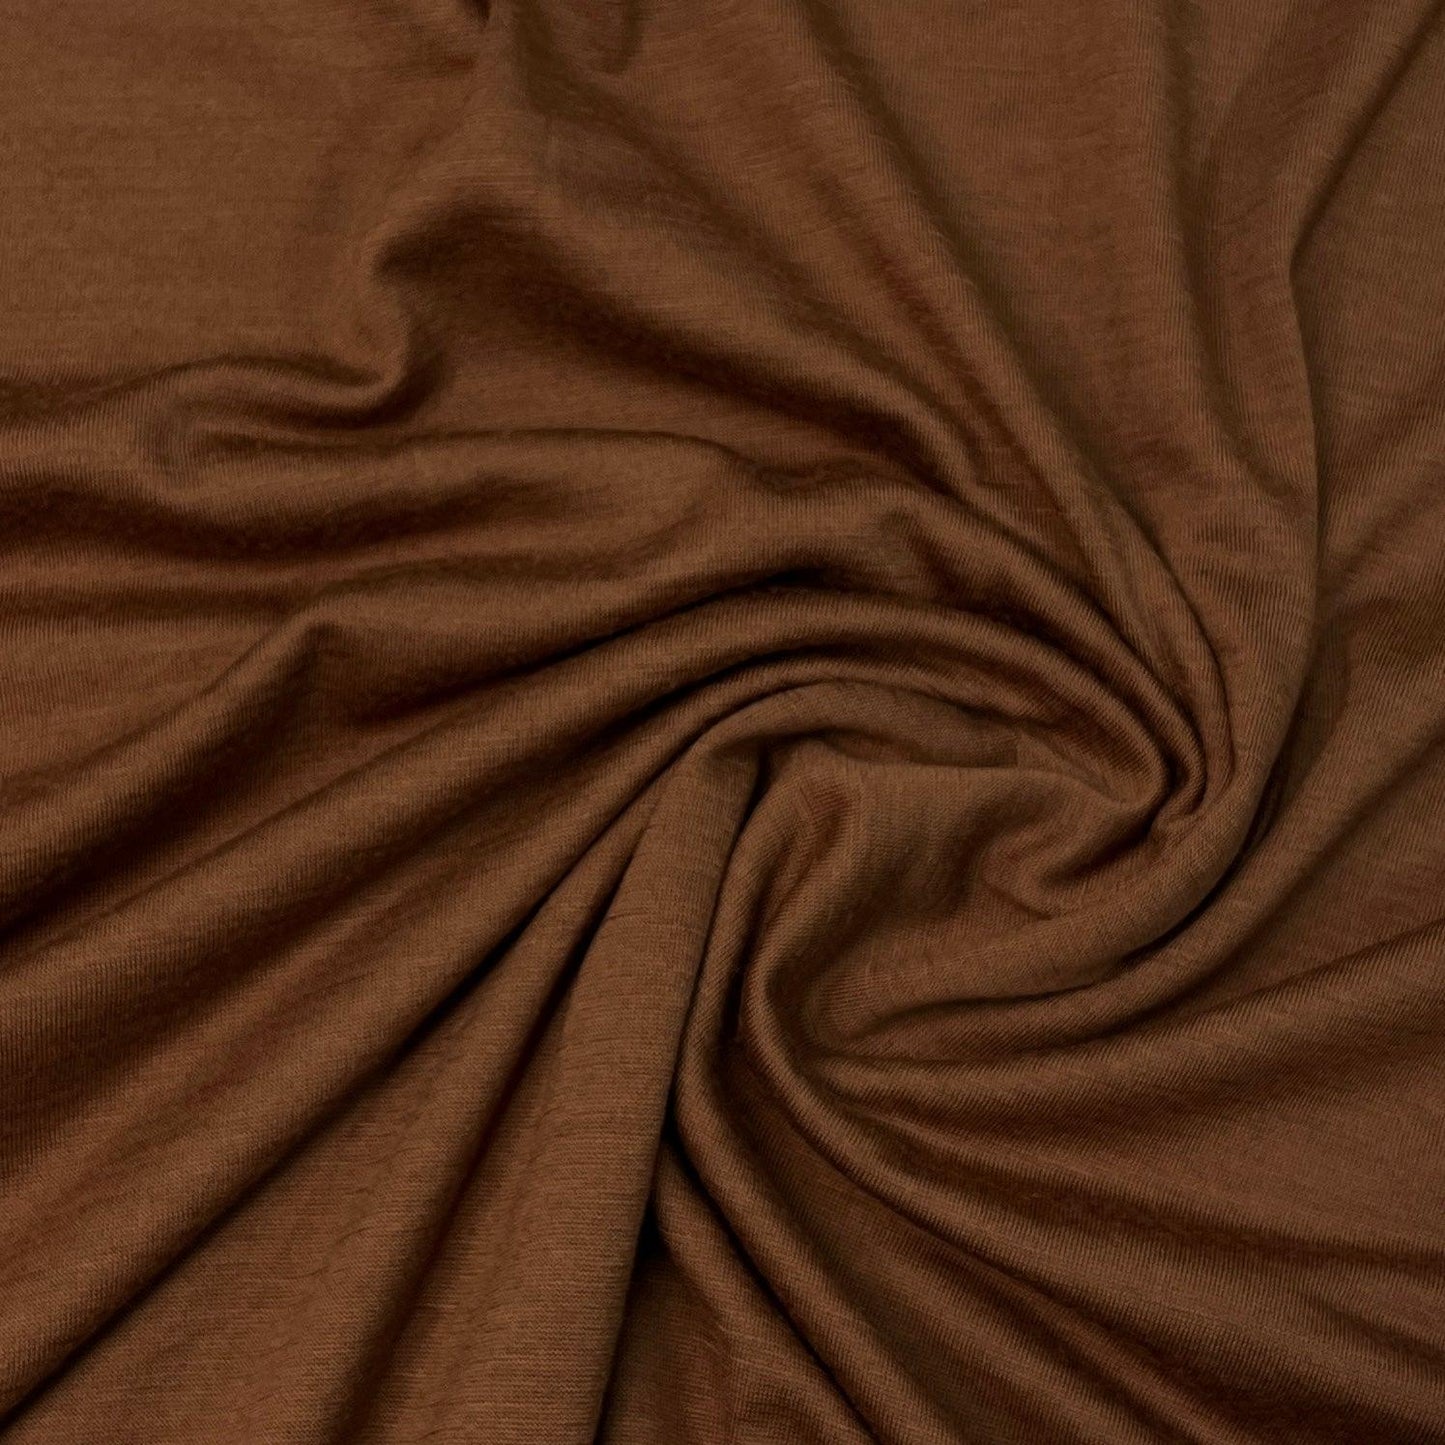 Nutmeg 100% Merino Wool Jersey Fabric - 200 GSM by Telio - Nature's Fabrics